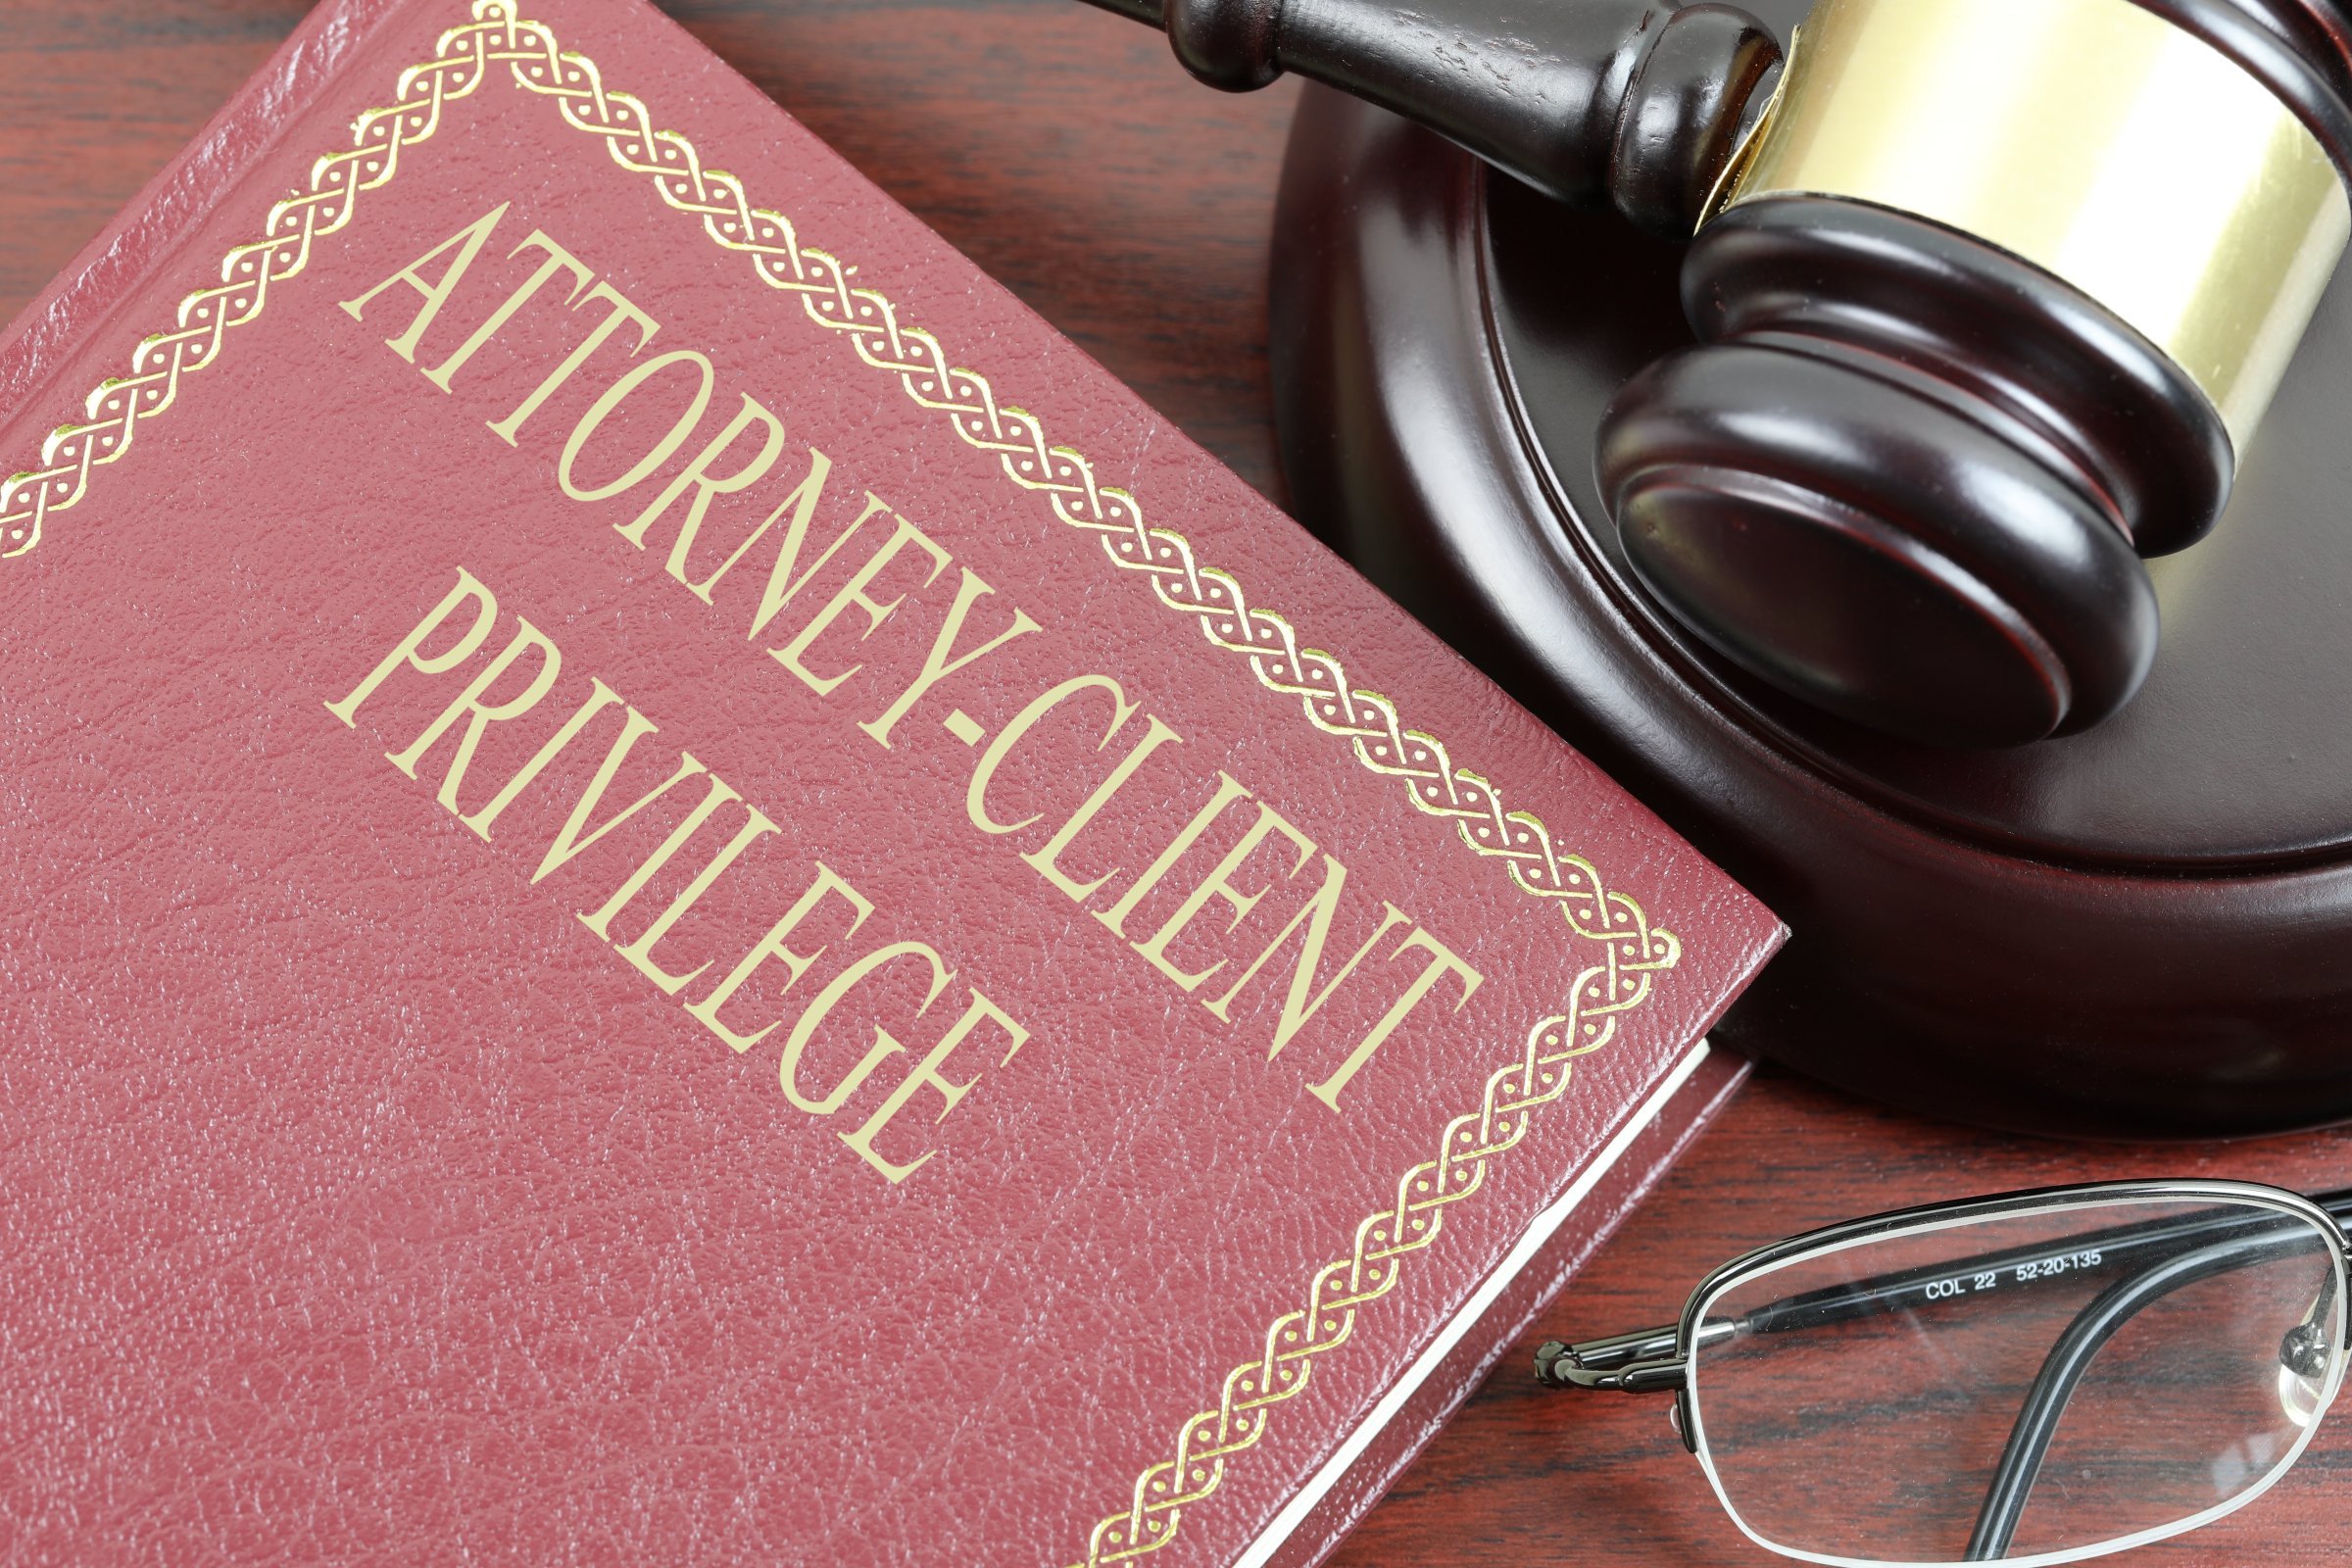 attorney client privilege